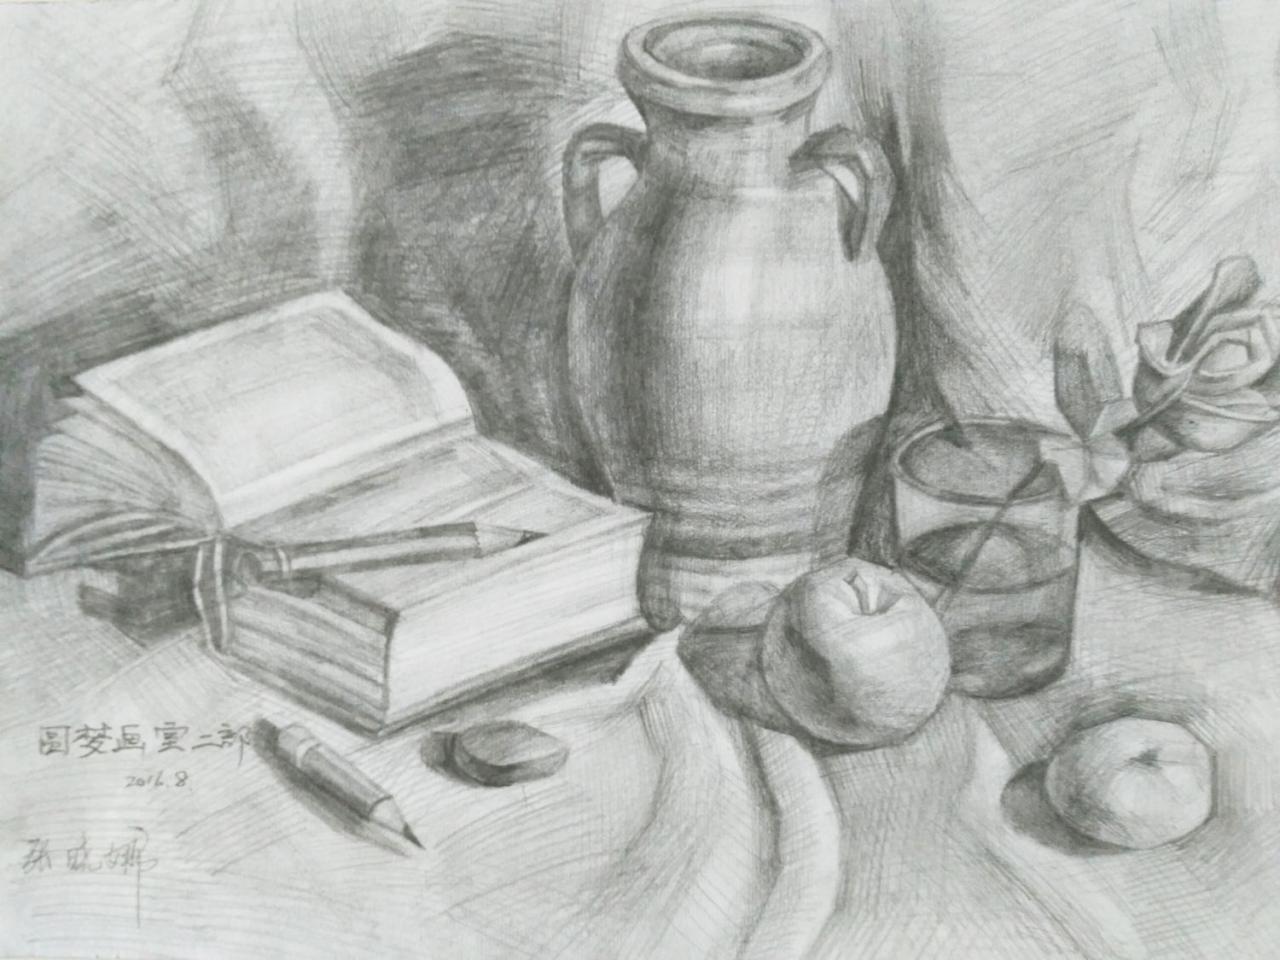 陶罐、瓷瓶、书、玻璃杯、苹果、笔 静物素描 张晓娜画